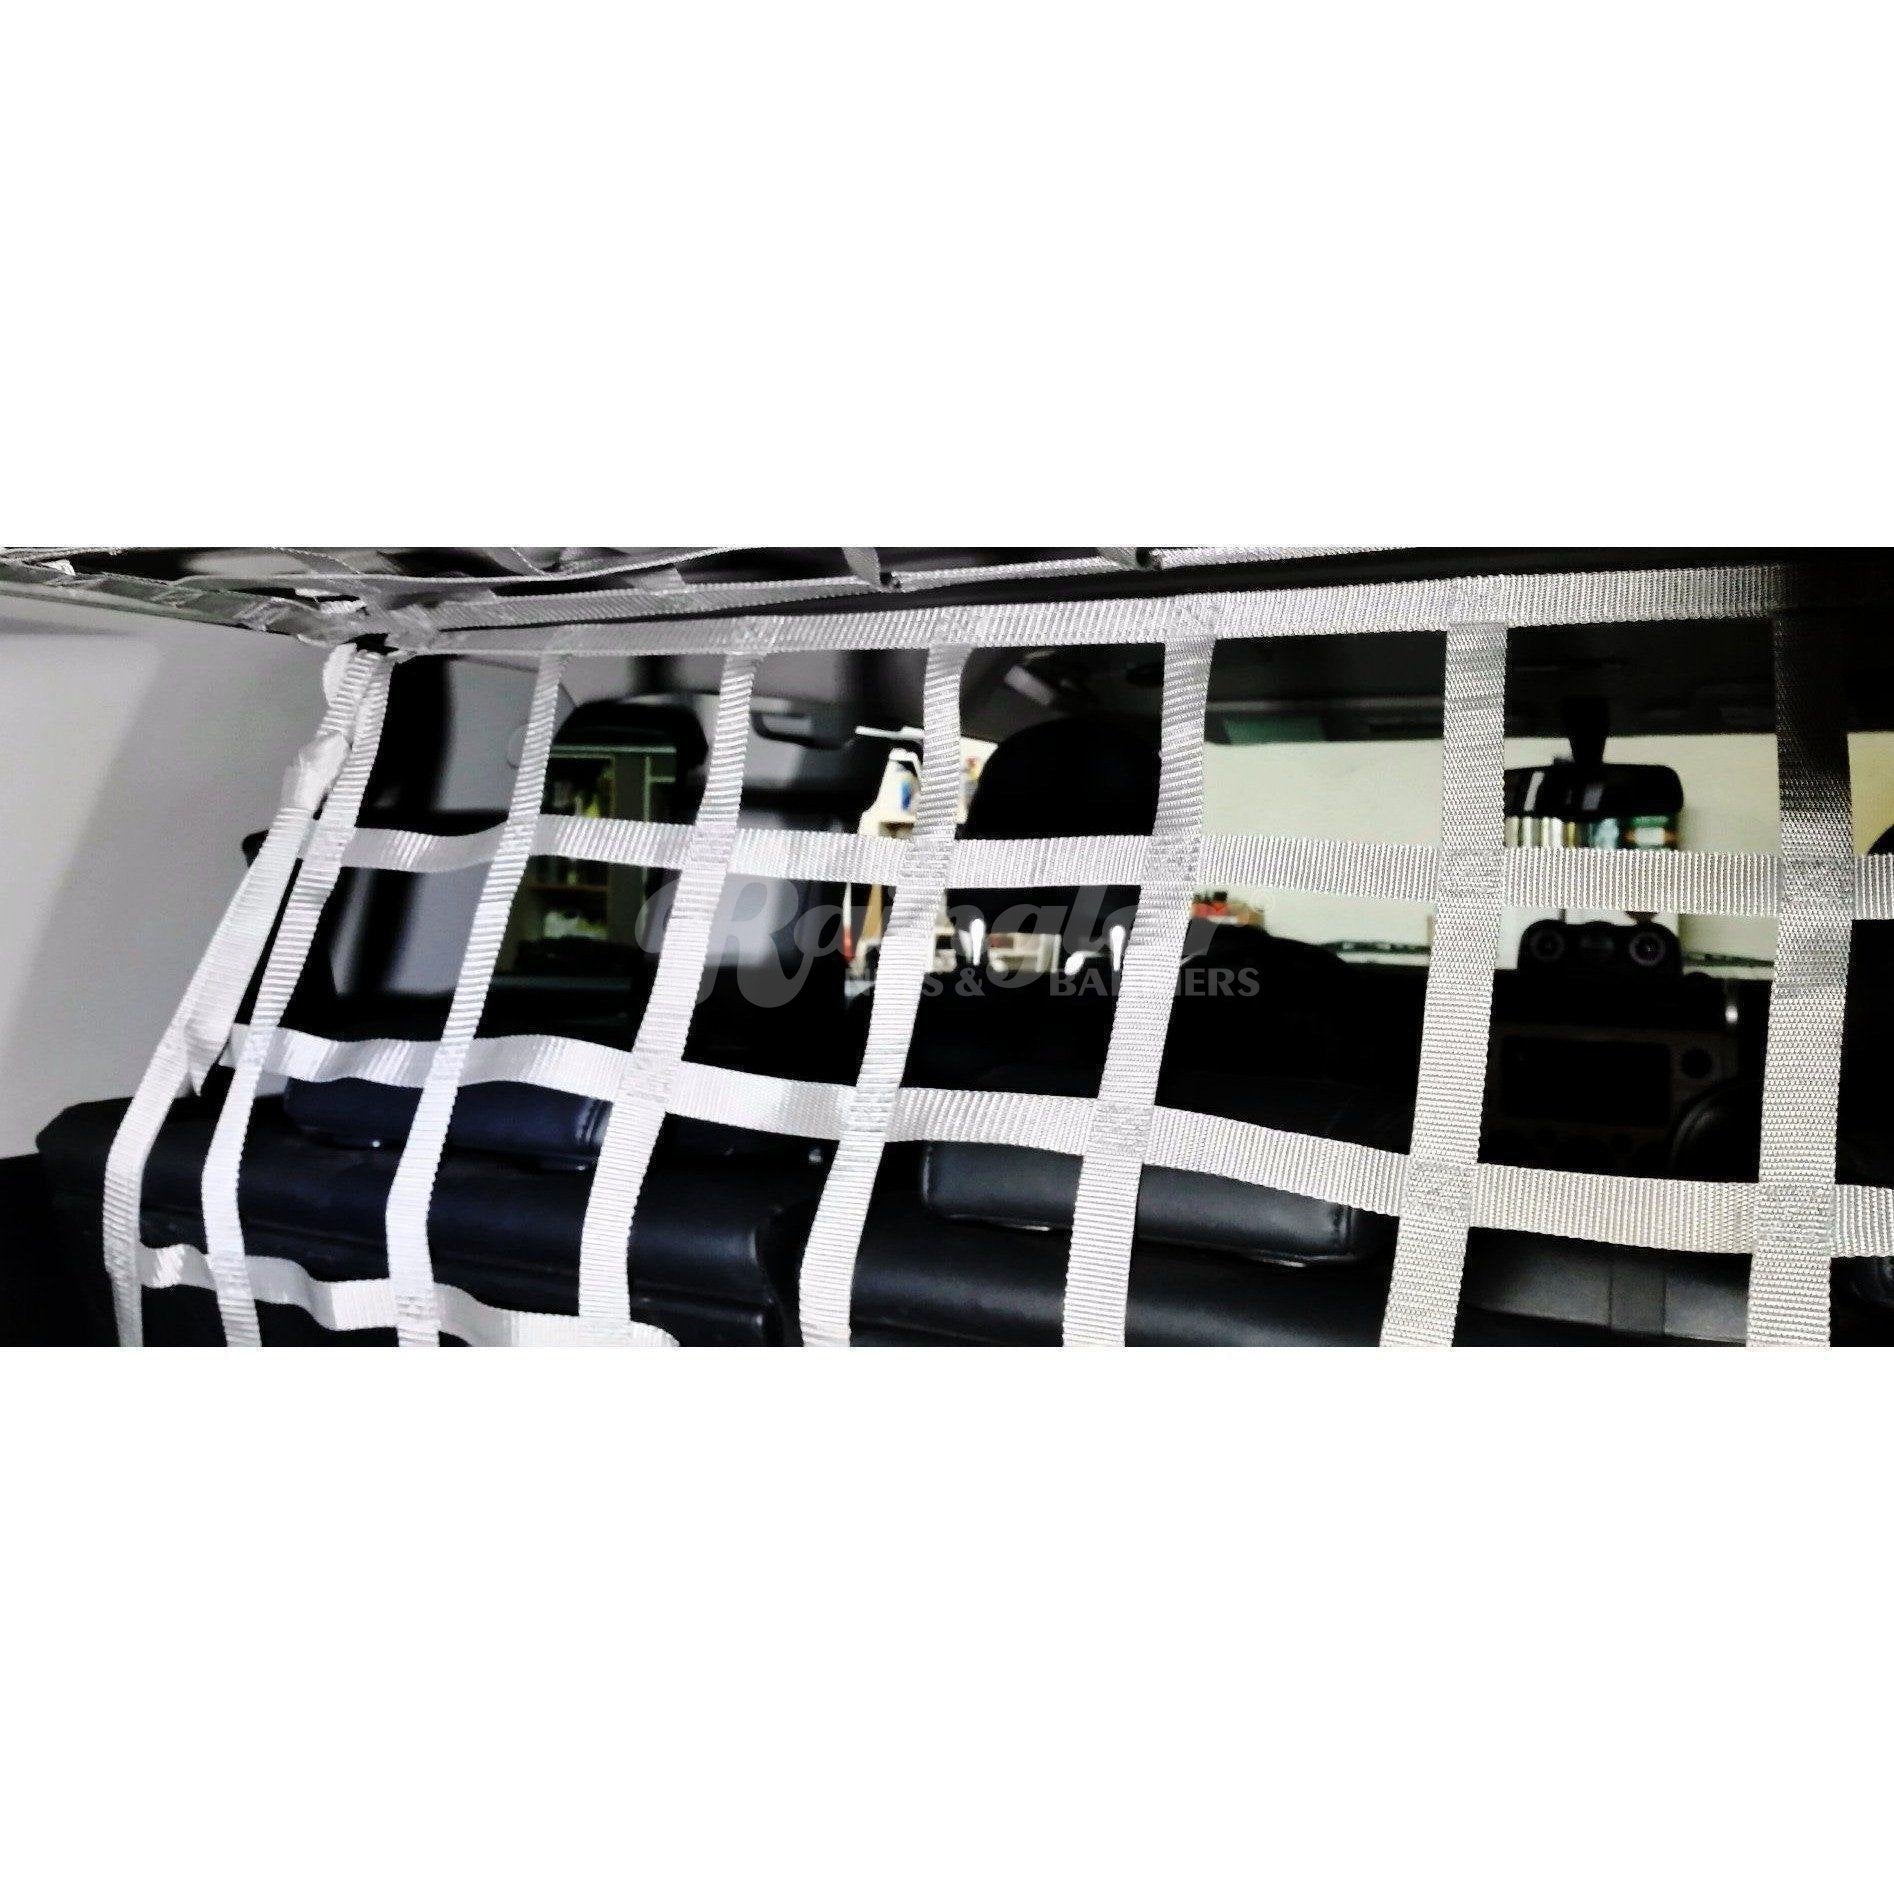 2007 - Newer Toyota FJ Cruiser Behind Rear 2nd Row Seats Barrier Divider Net-Raingler